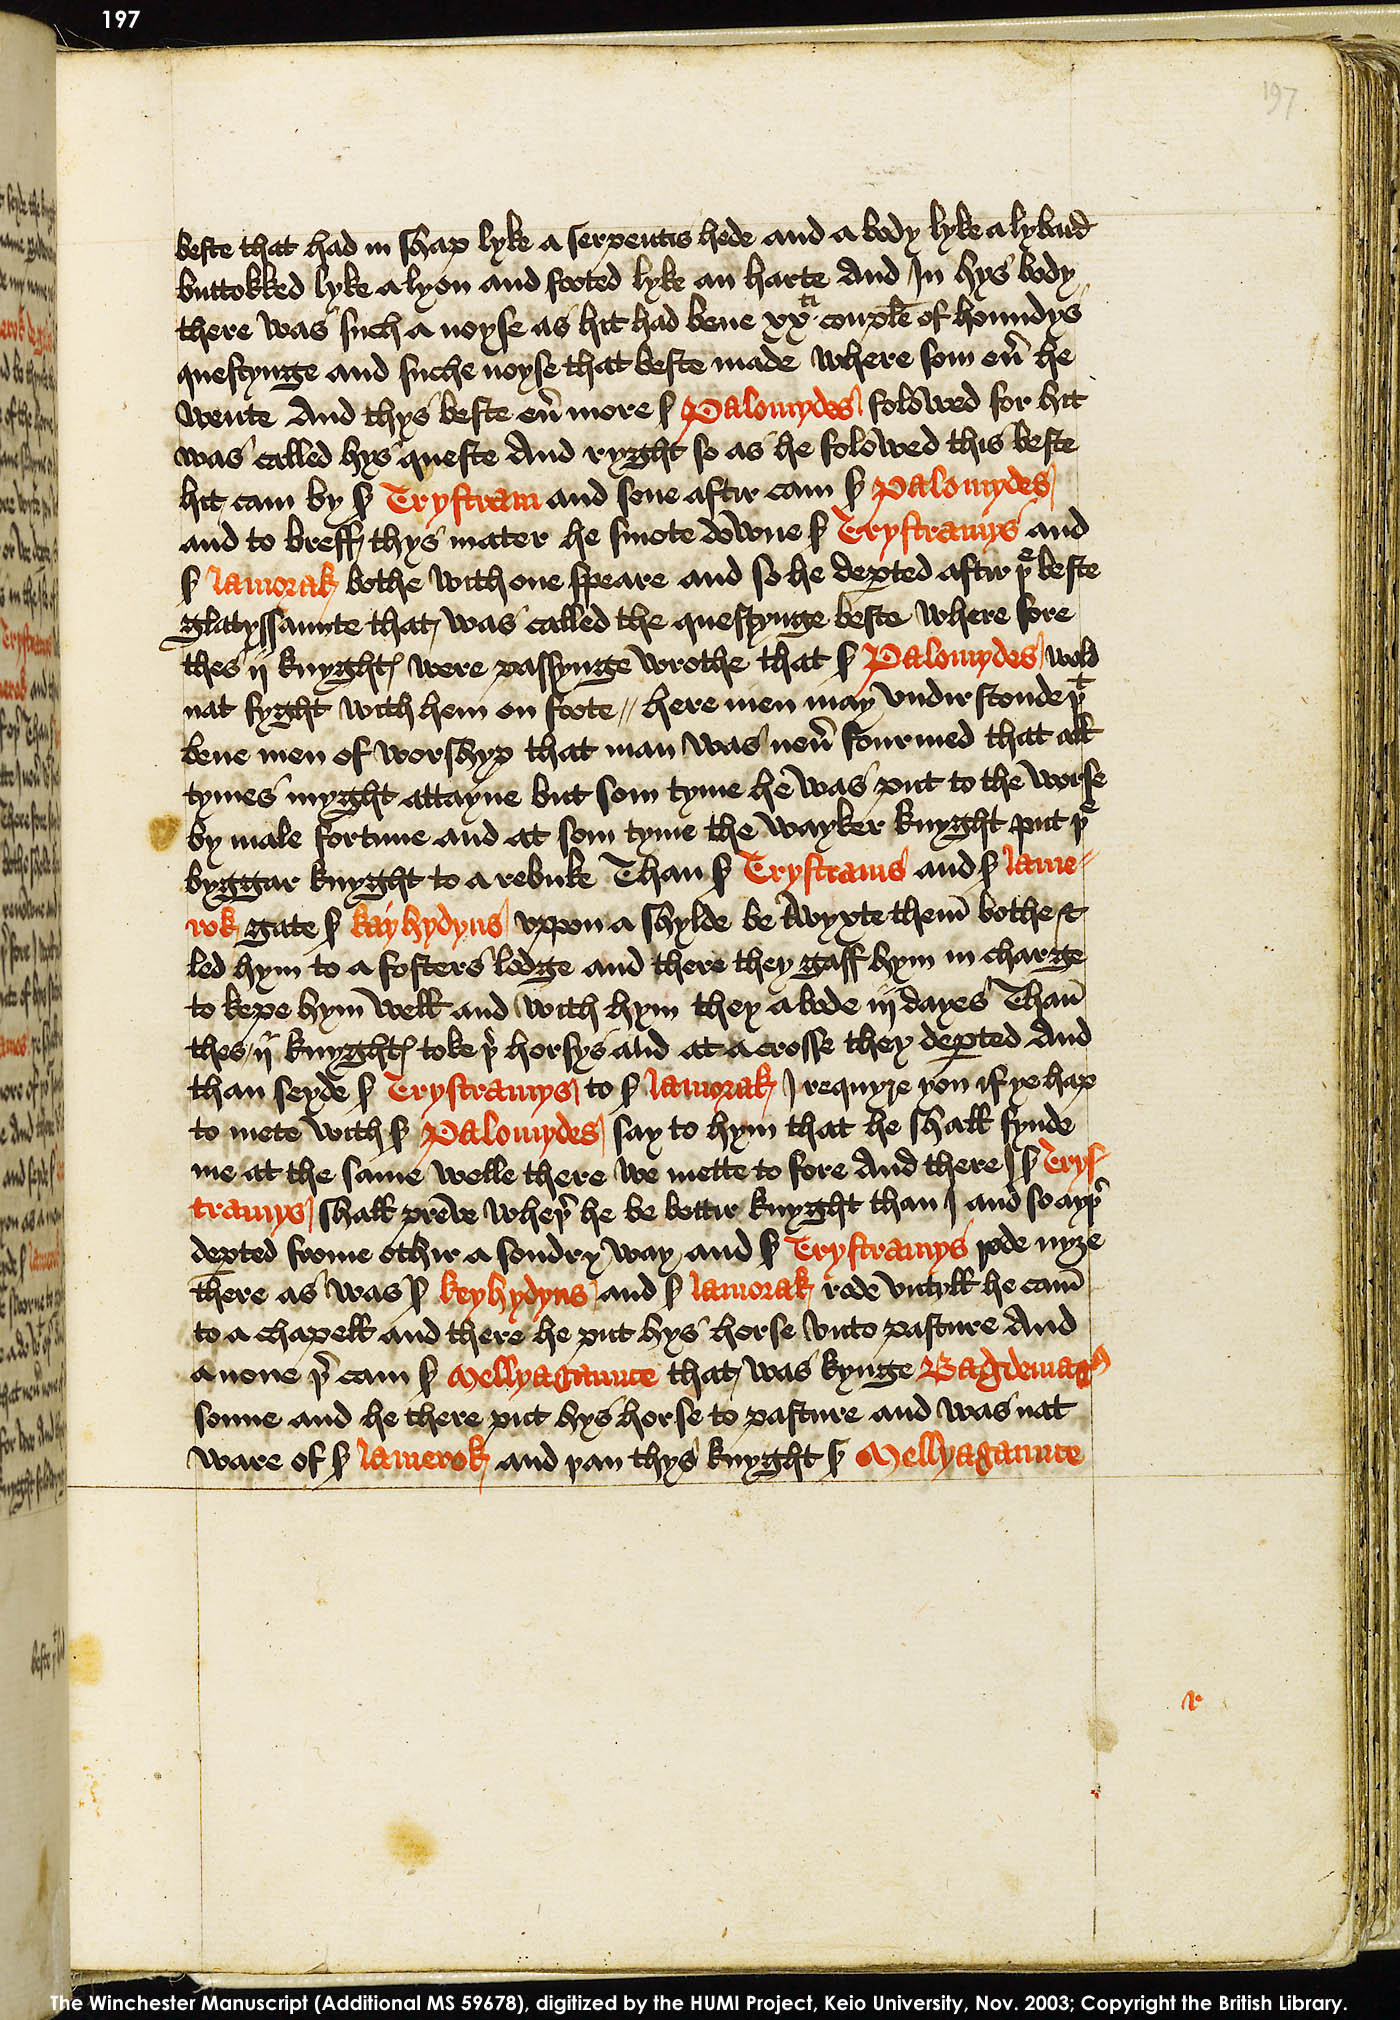 Folio 197r